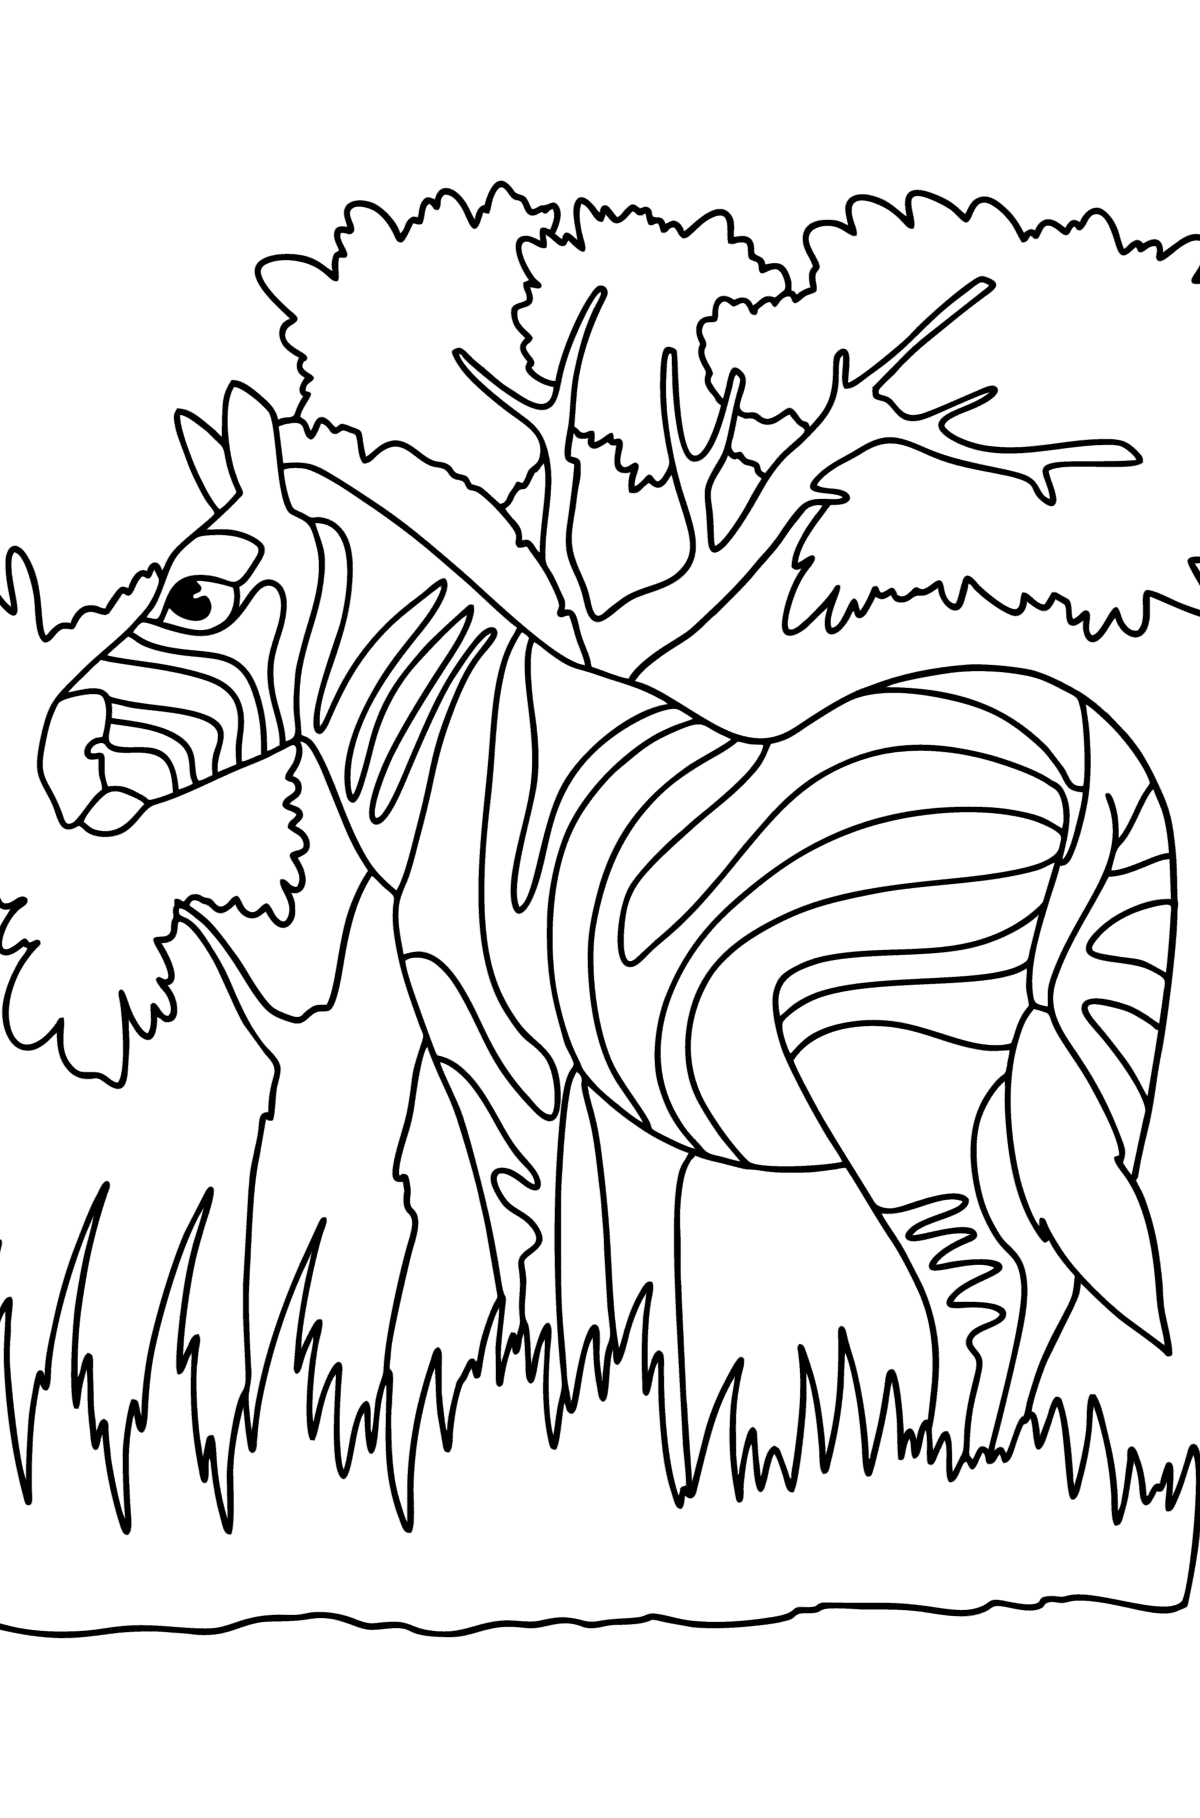 Disegno da colorare Zebra in natura - Disegni da colorare per bambini